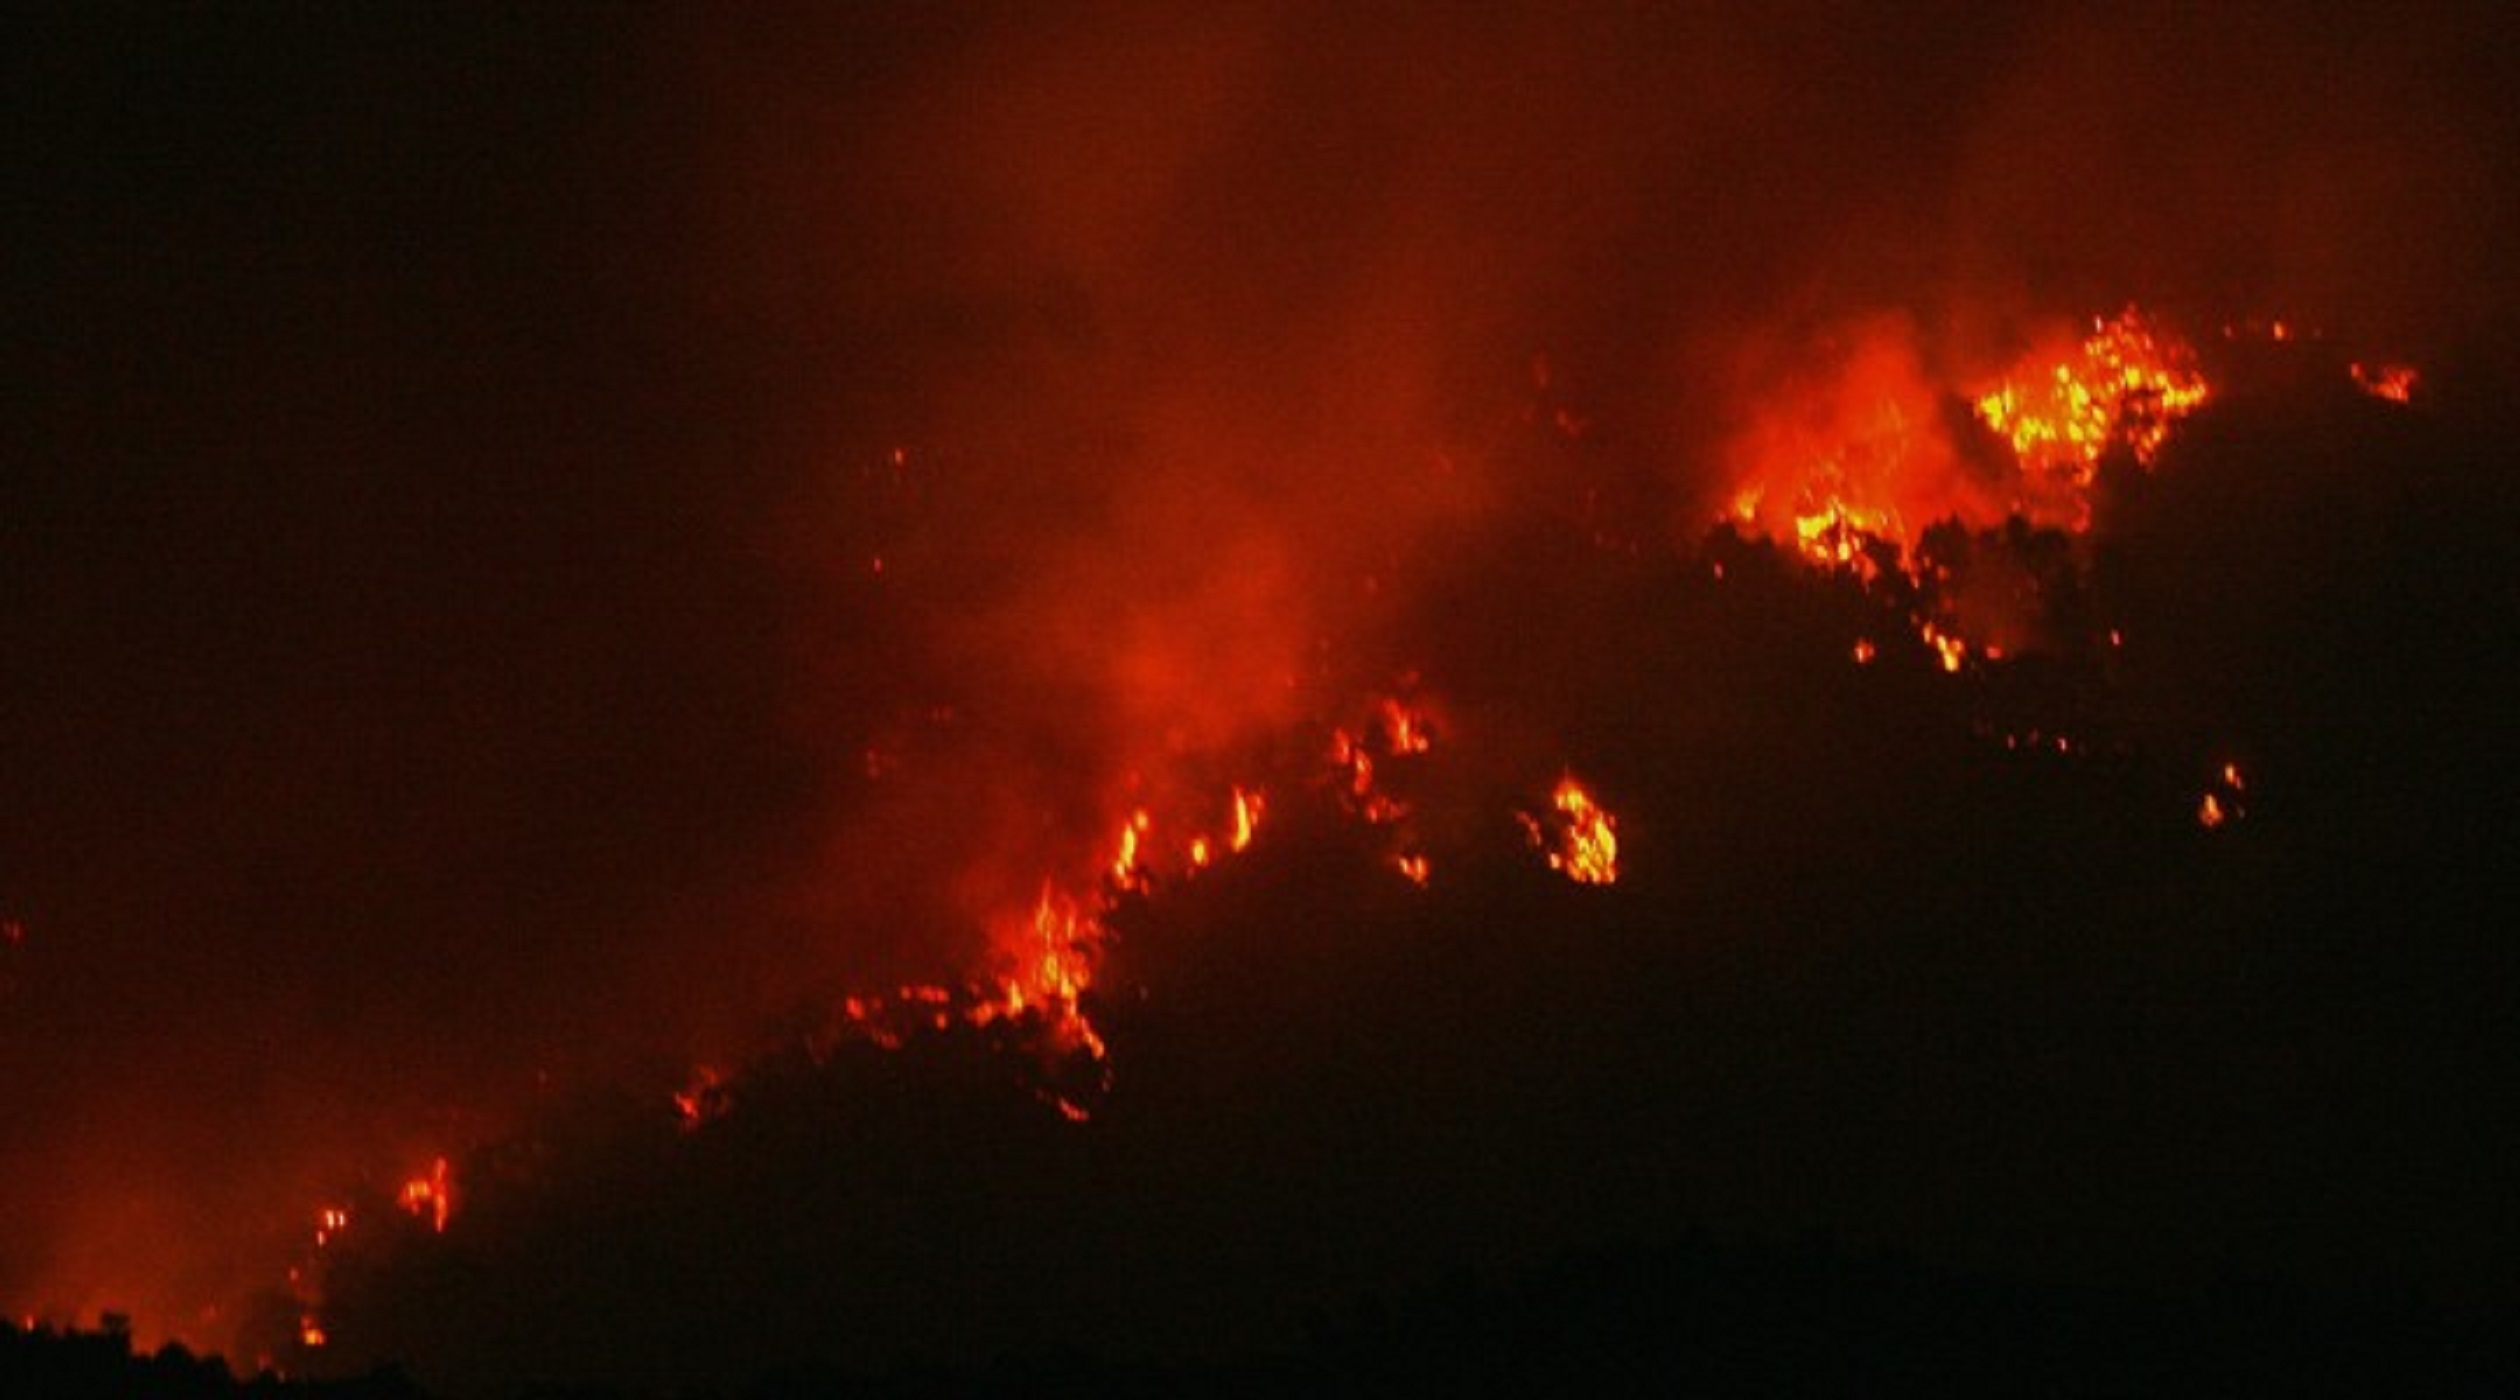 Ταΰγετος: Μεγάλη φωτιά στην περιοχή της Τόριζας